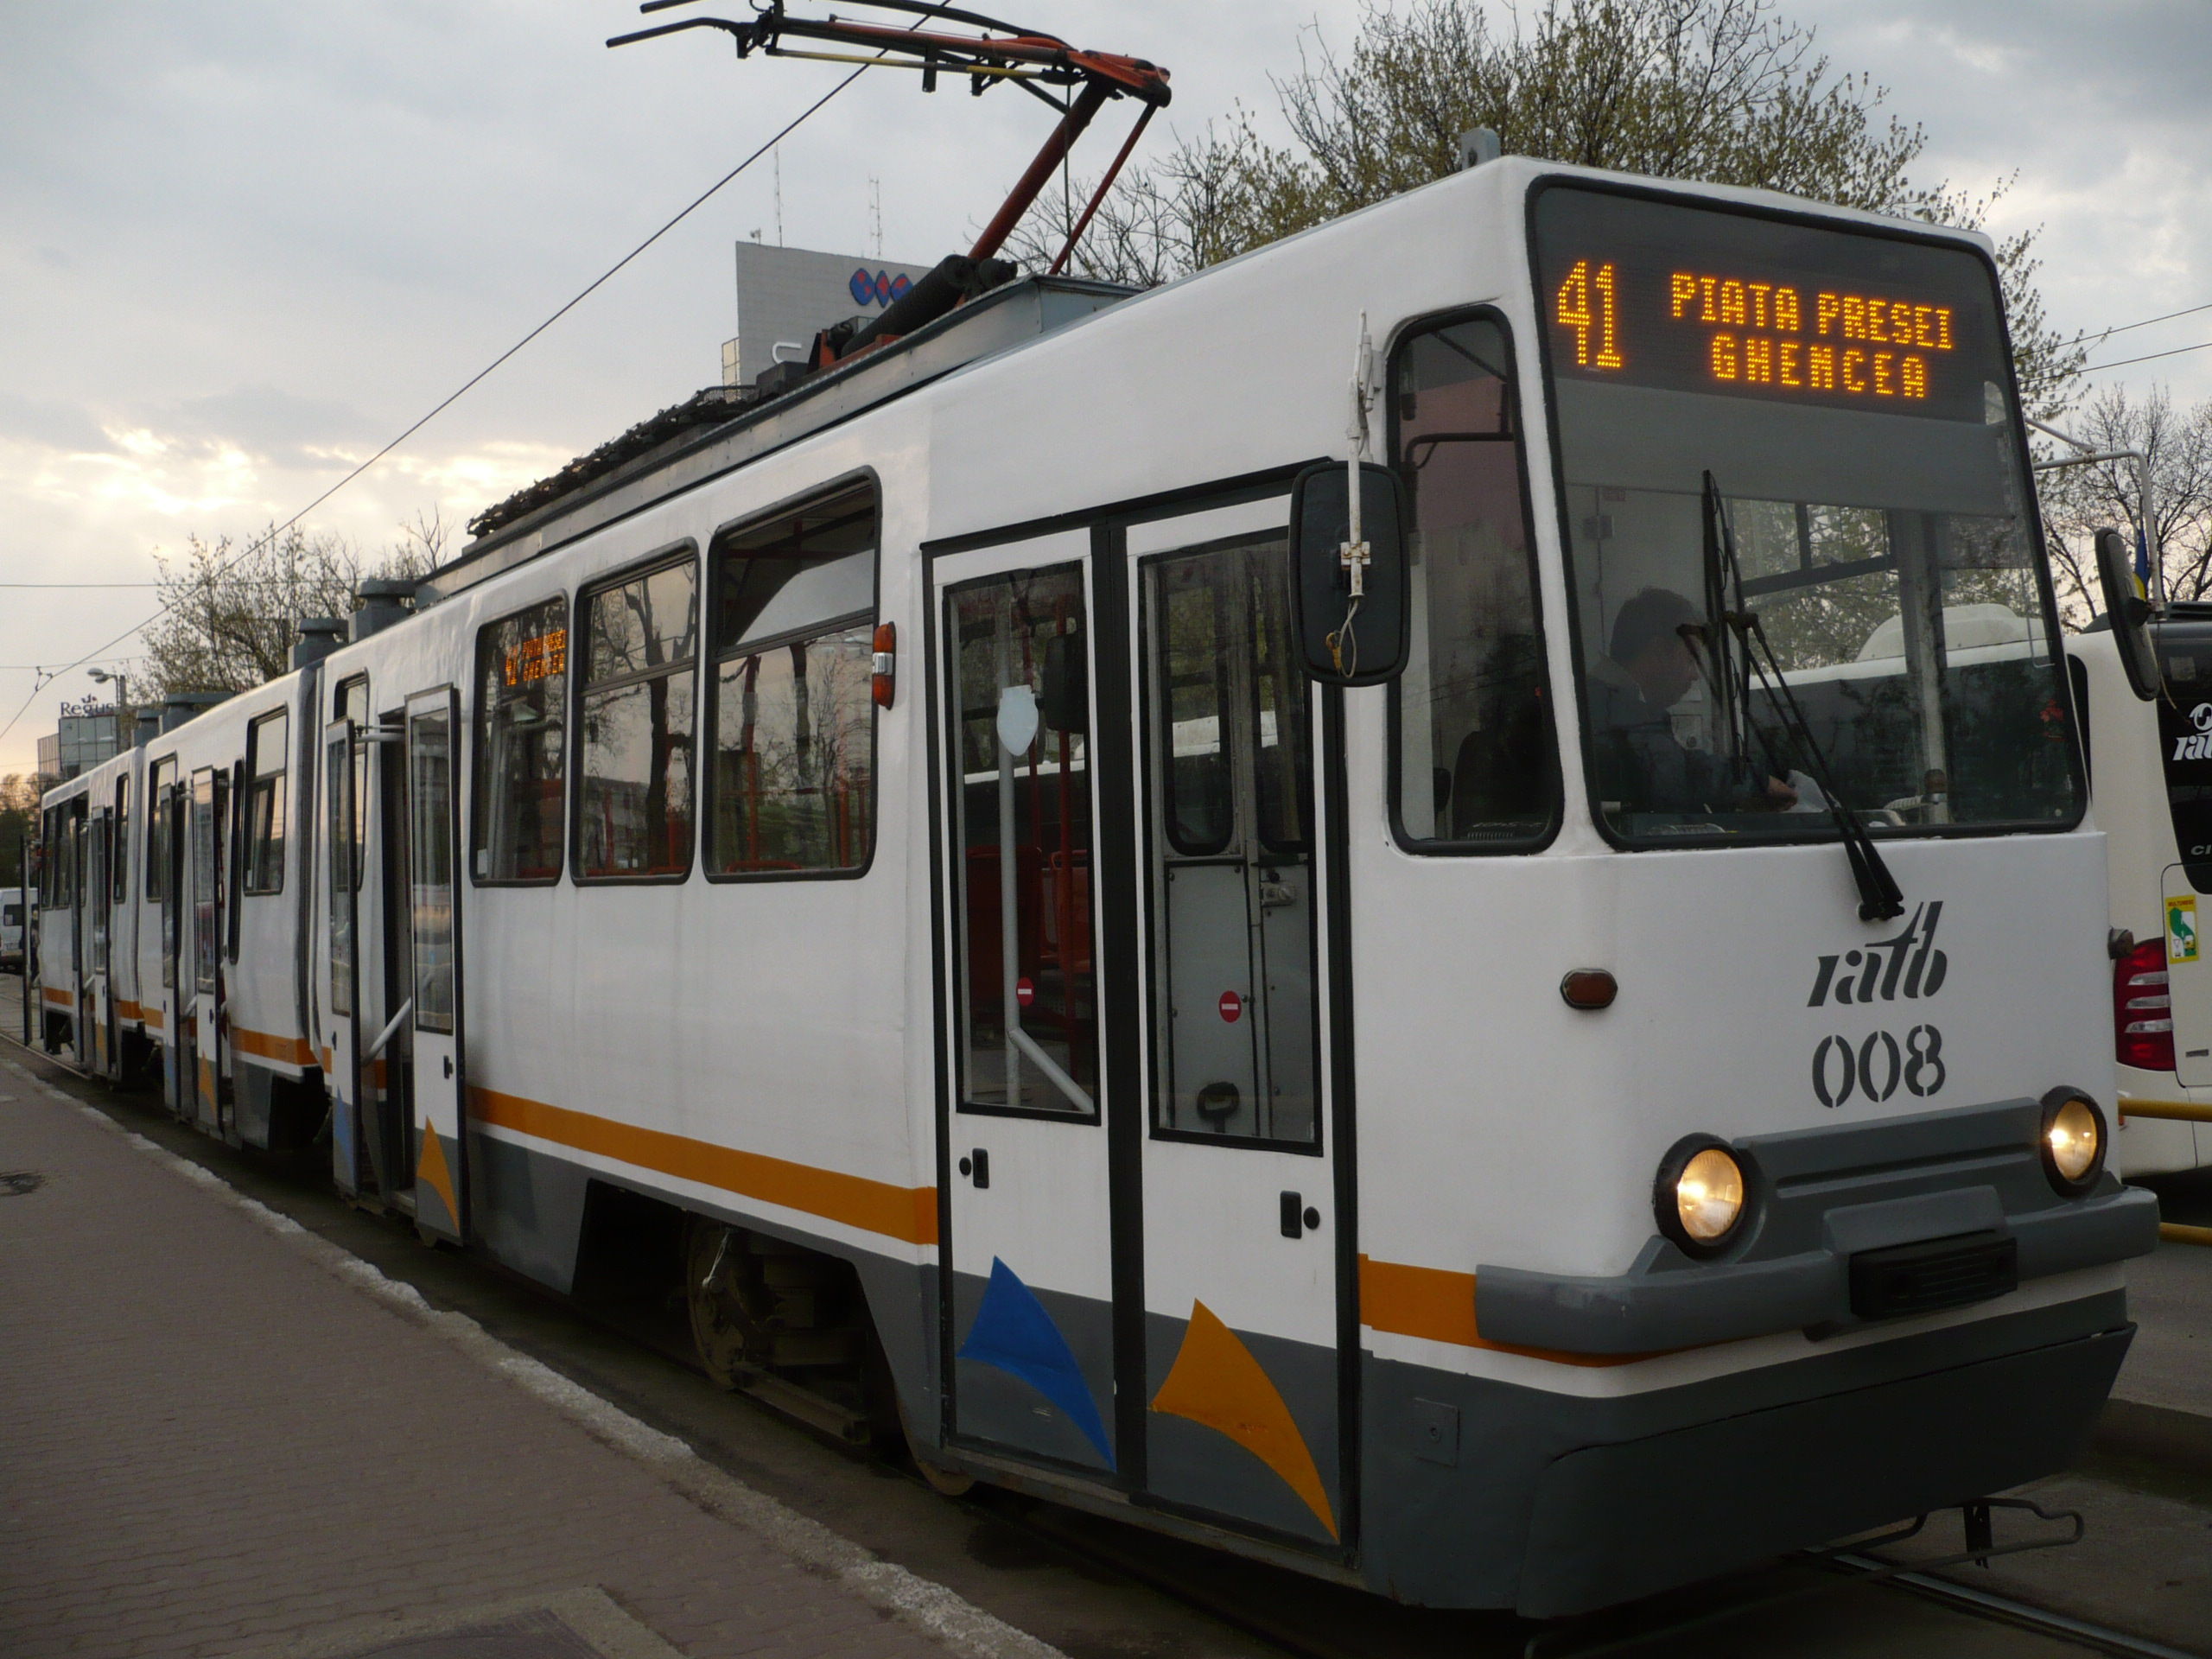 Circulaţia pe linia tramvaiului 41 din Capitală, blocată în urma unui accident; o femeie, rănită